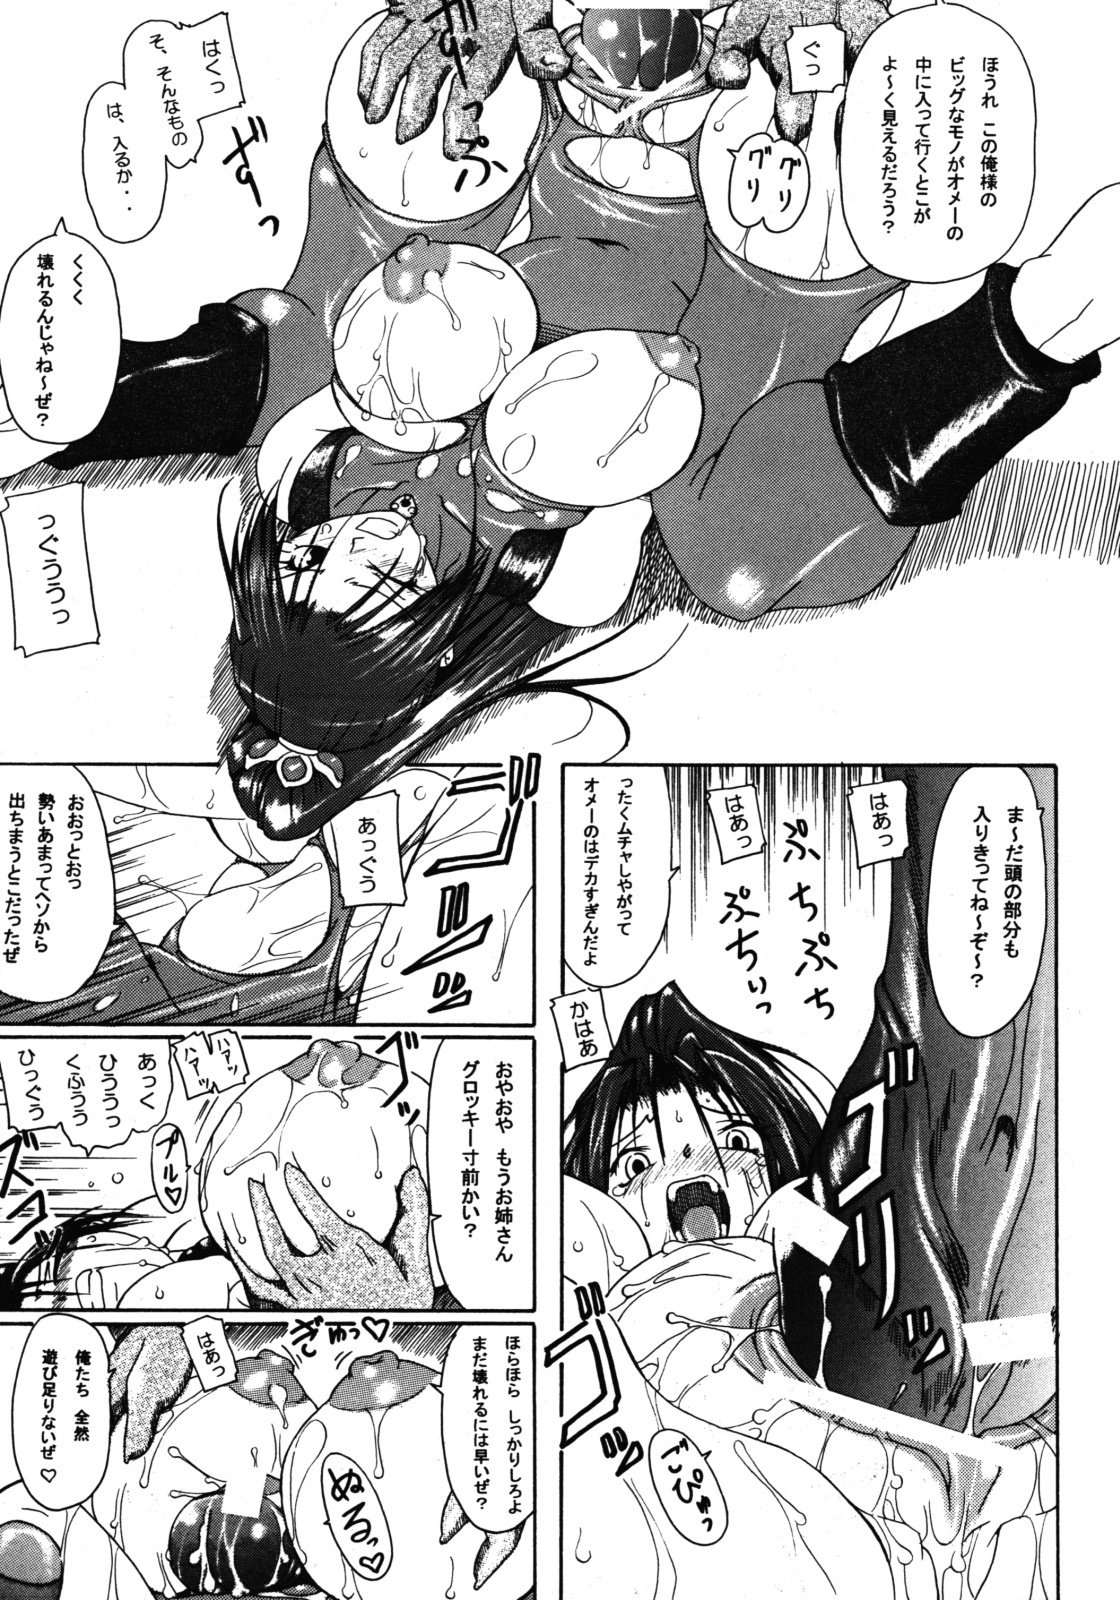 (SC24) [Furuya (Take)] Kakugee Zanmai 4 (Darkstalkers, SoulCalibur) page 6 full